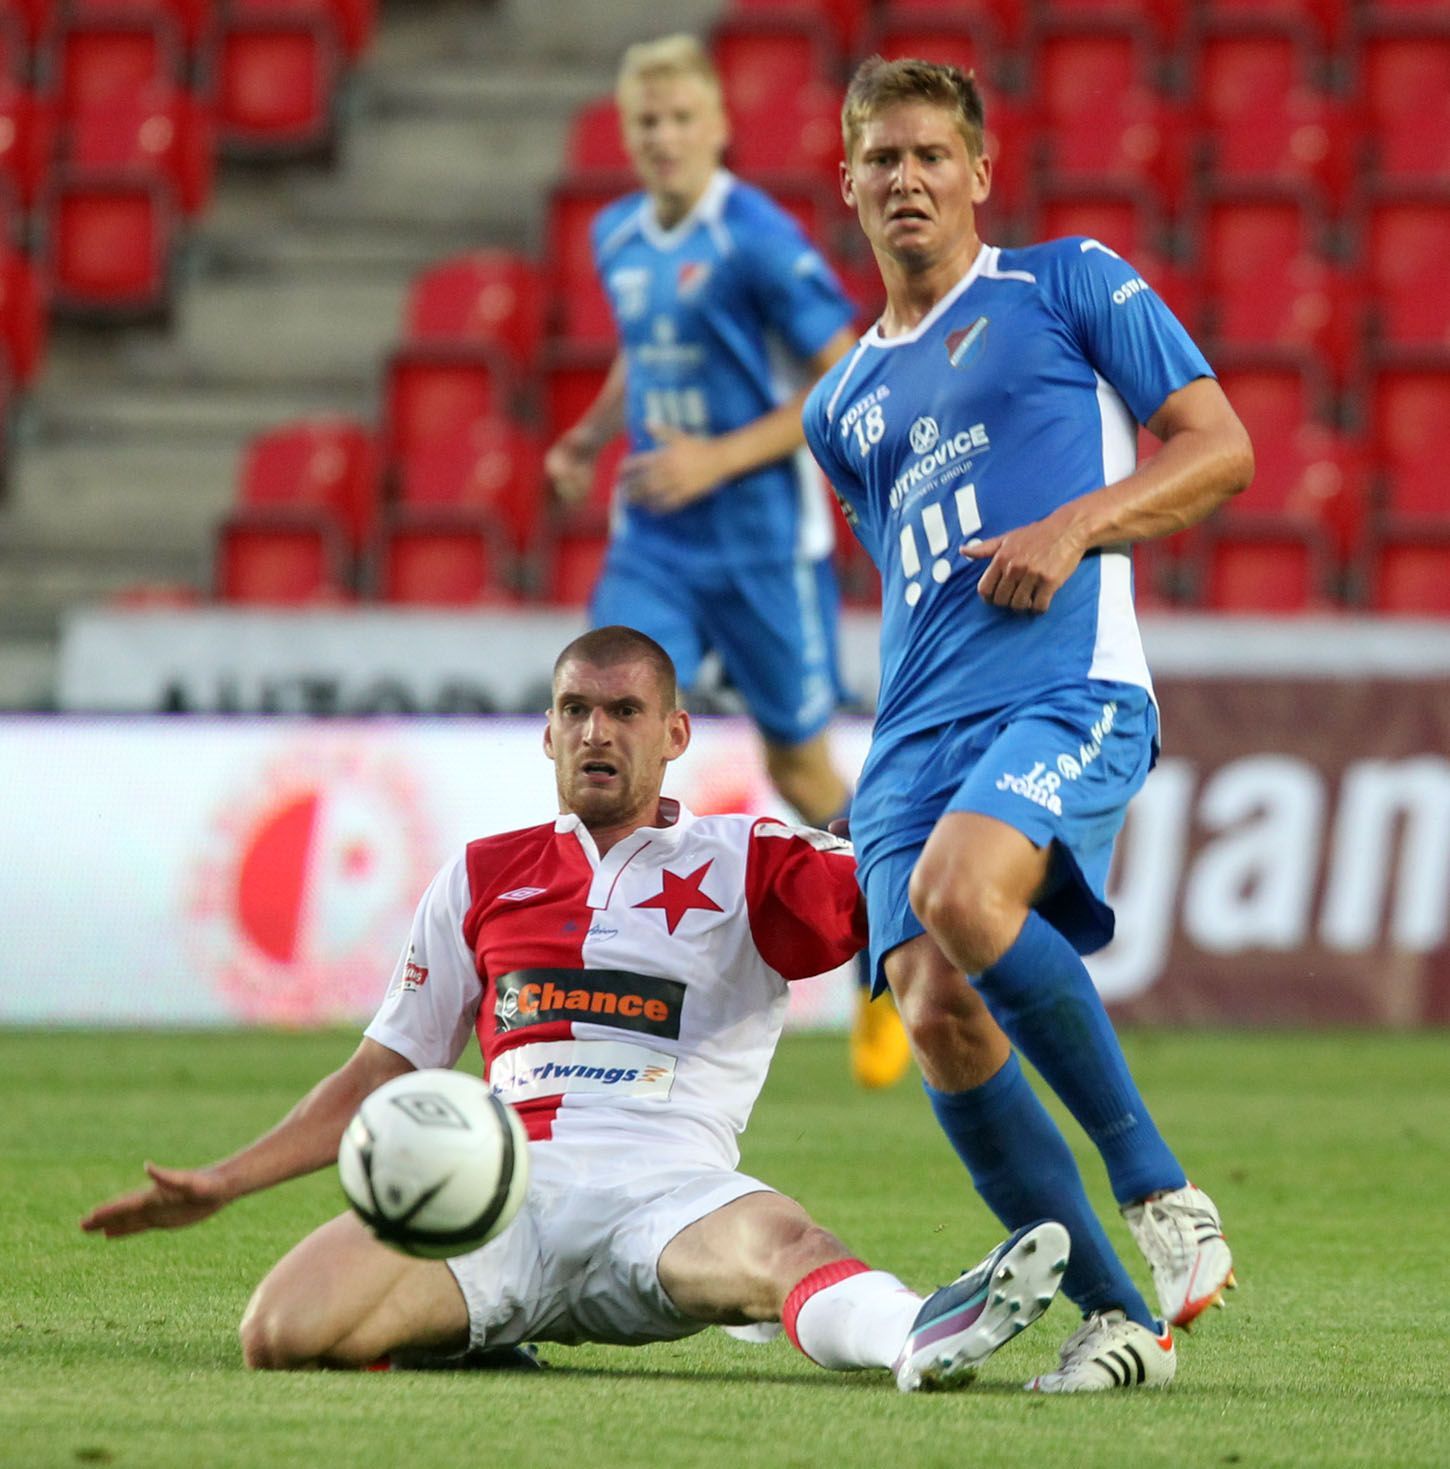 Slavia - Ostrava: Jakub Rolinc